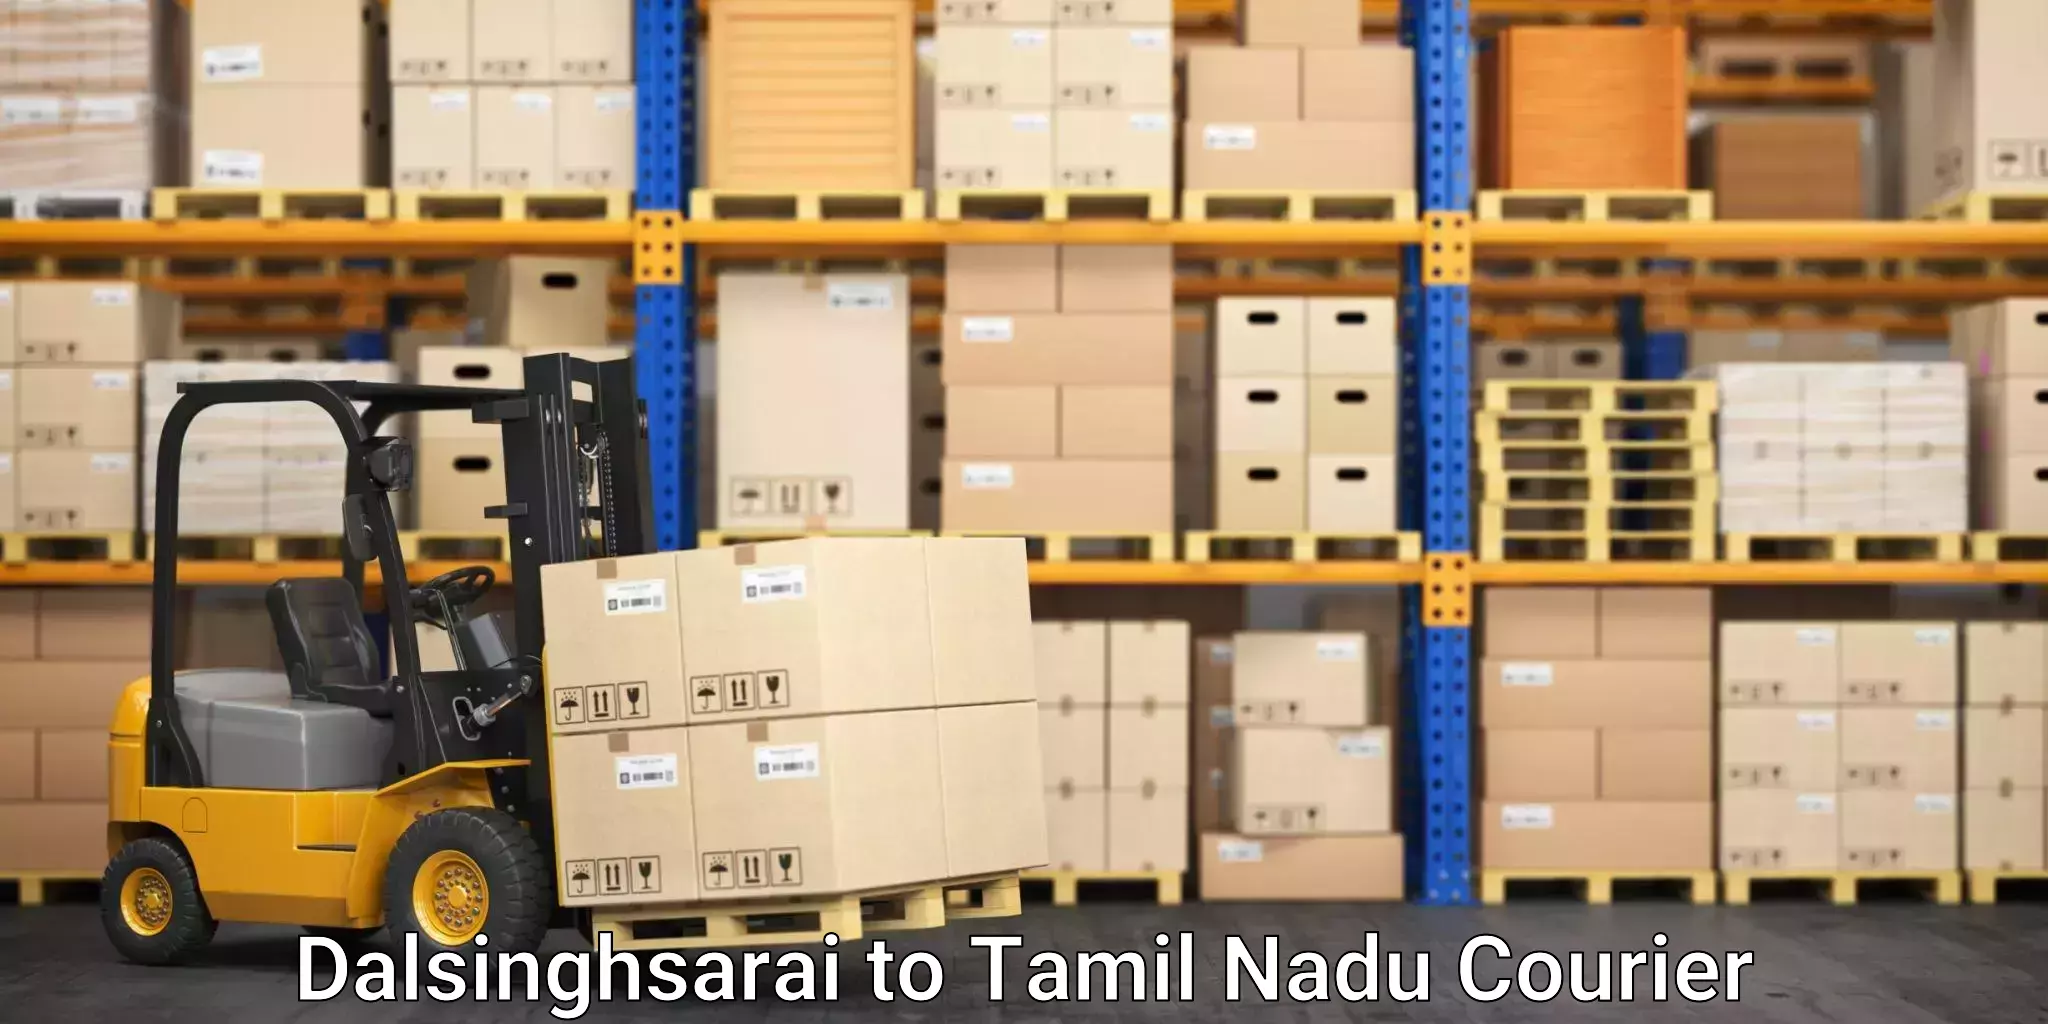 Furniture moving service Dalsinghsarai to Tamil Nadu